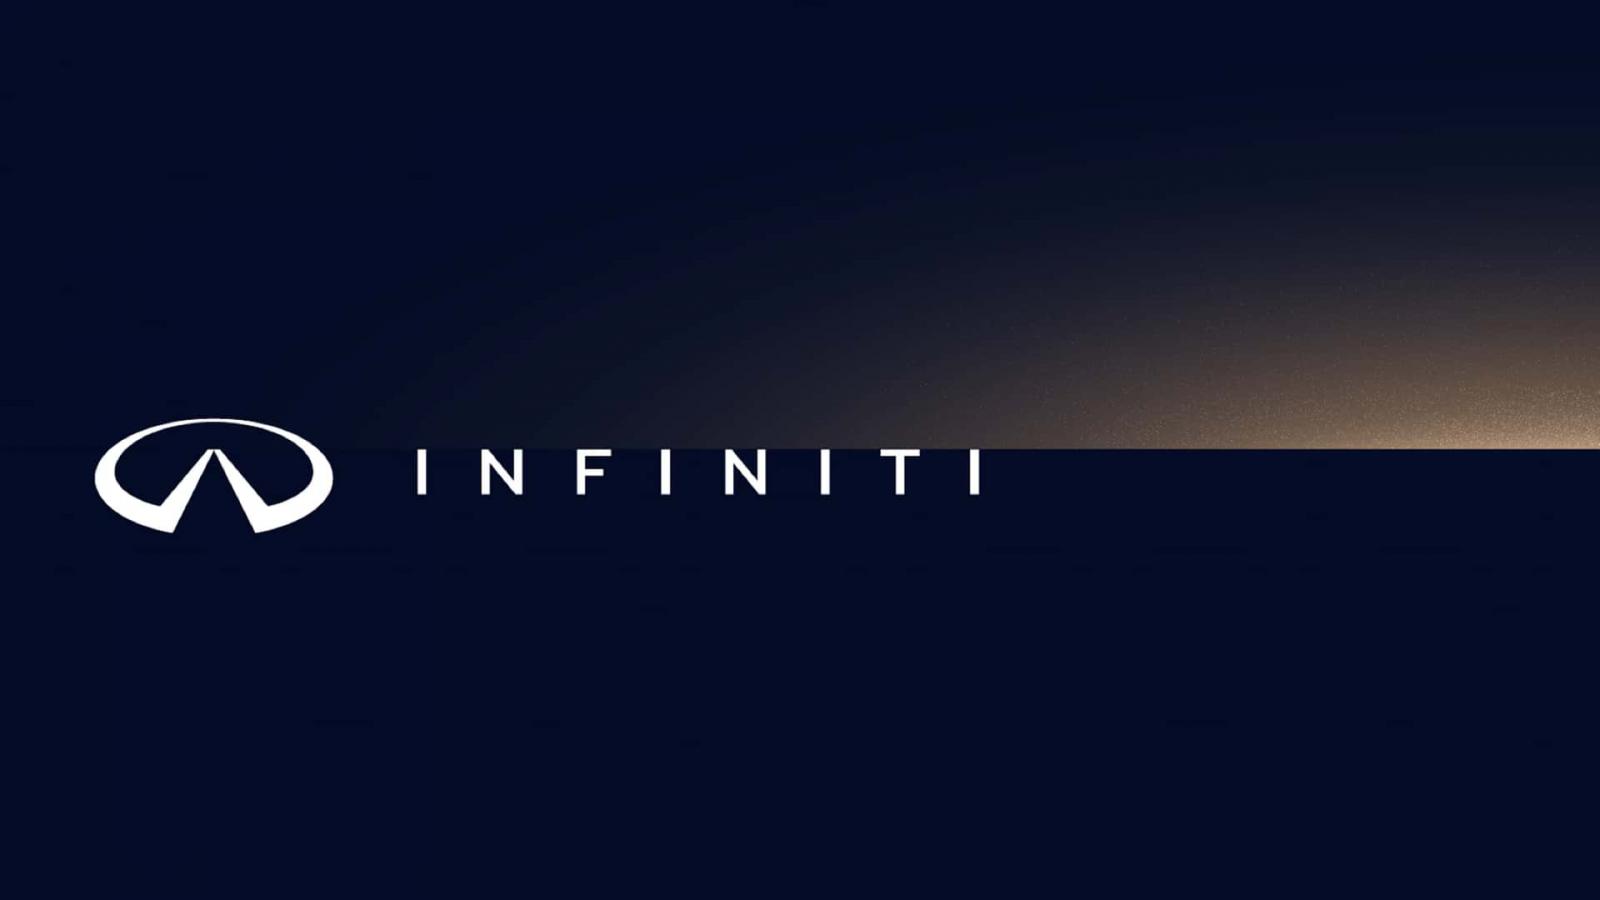 Η Infiniti έδωσε νέα 3D εμφάνιση στο σήμα της!